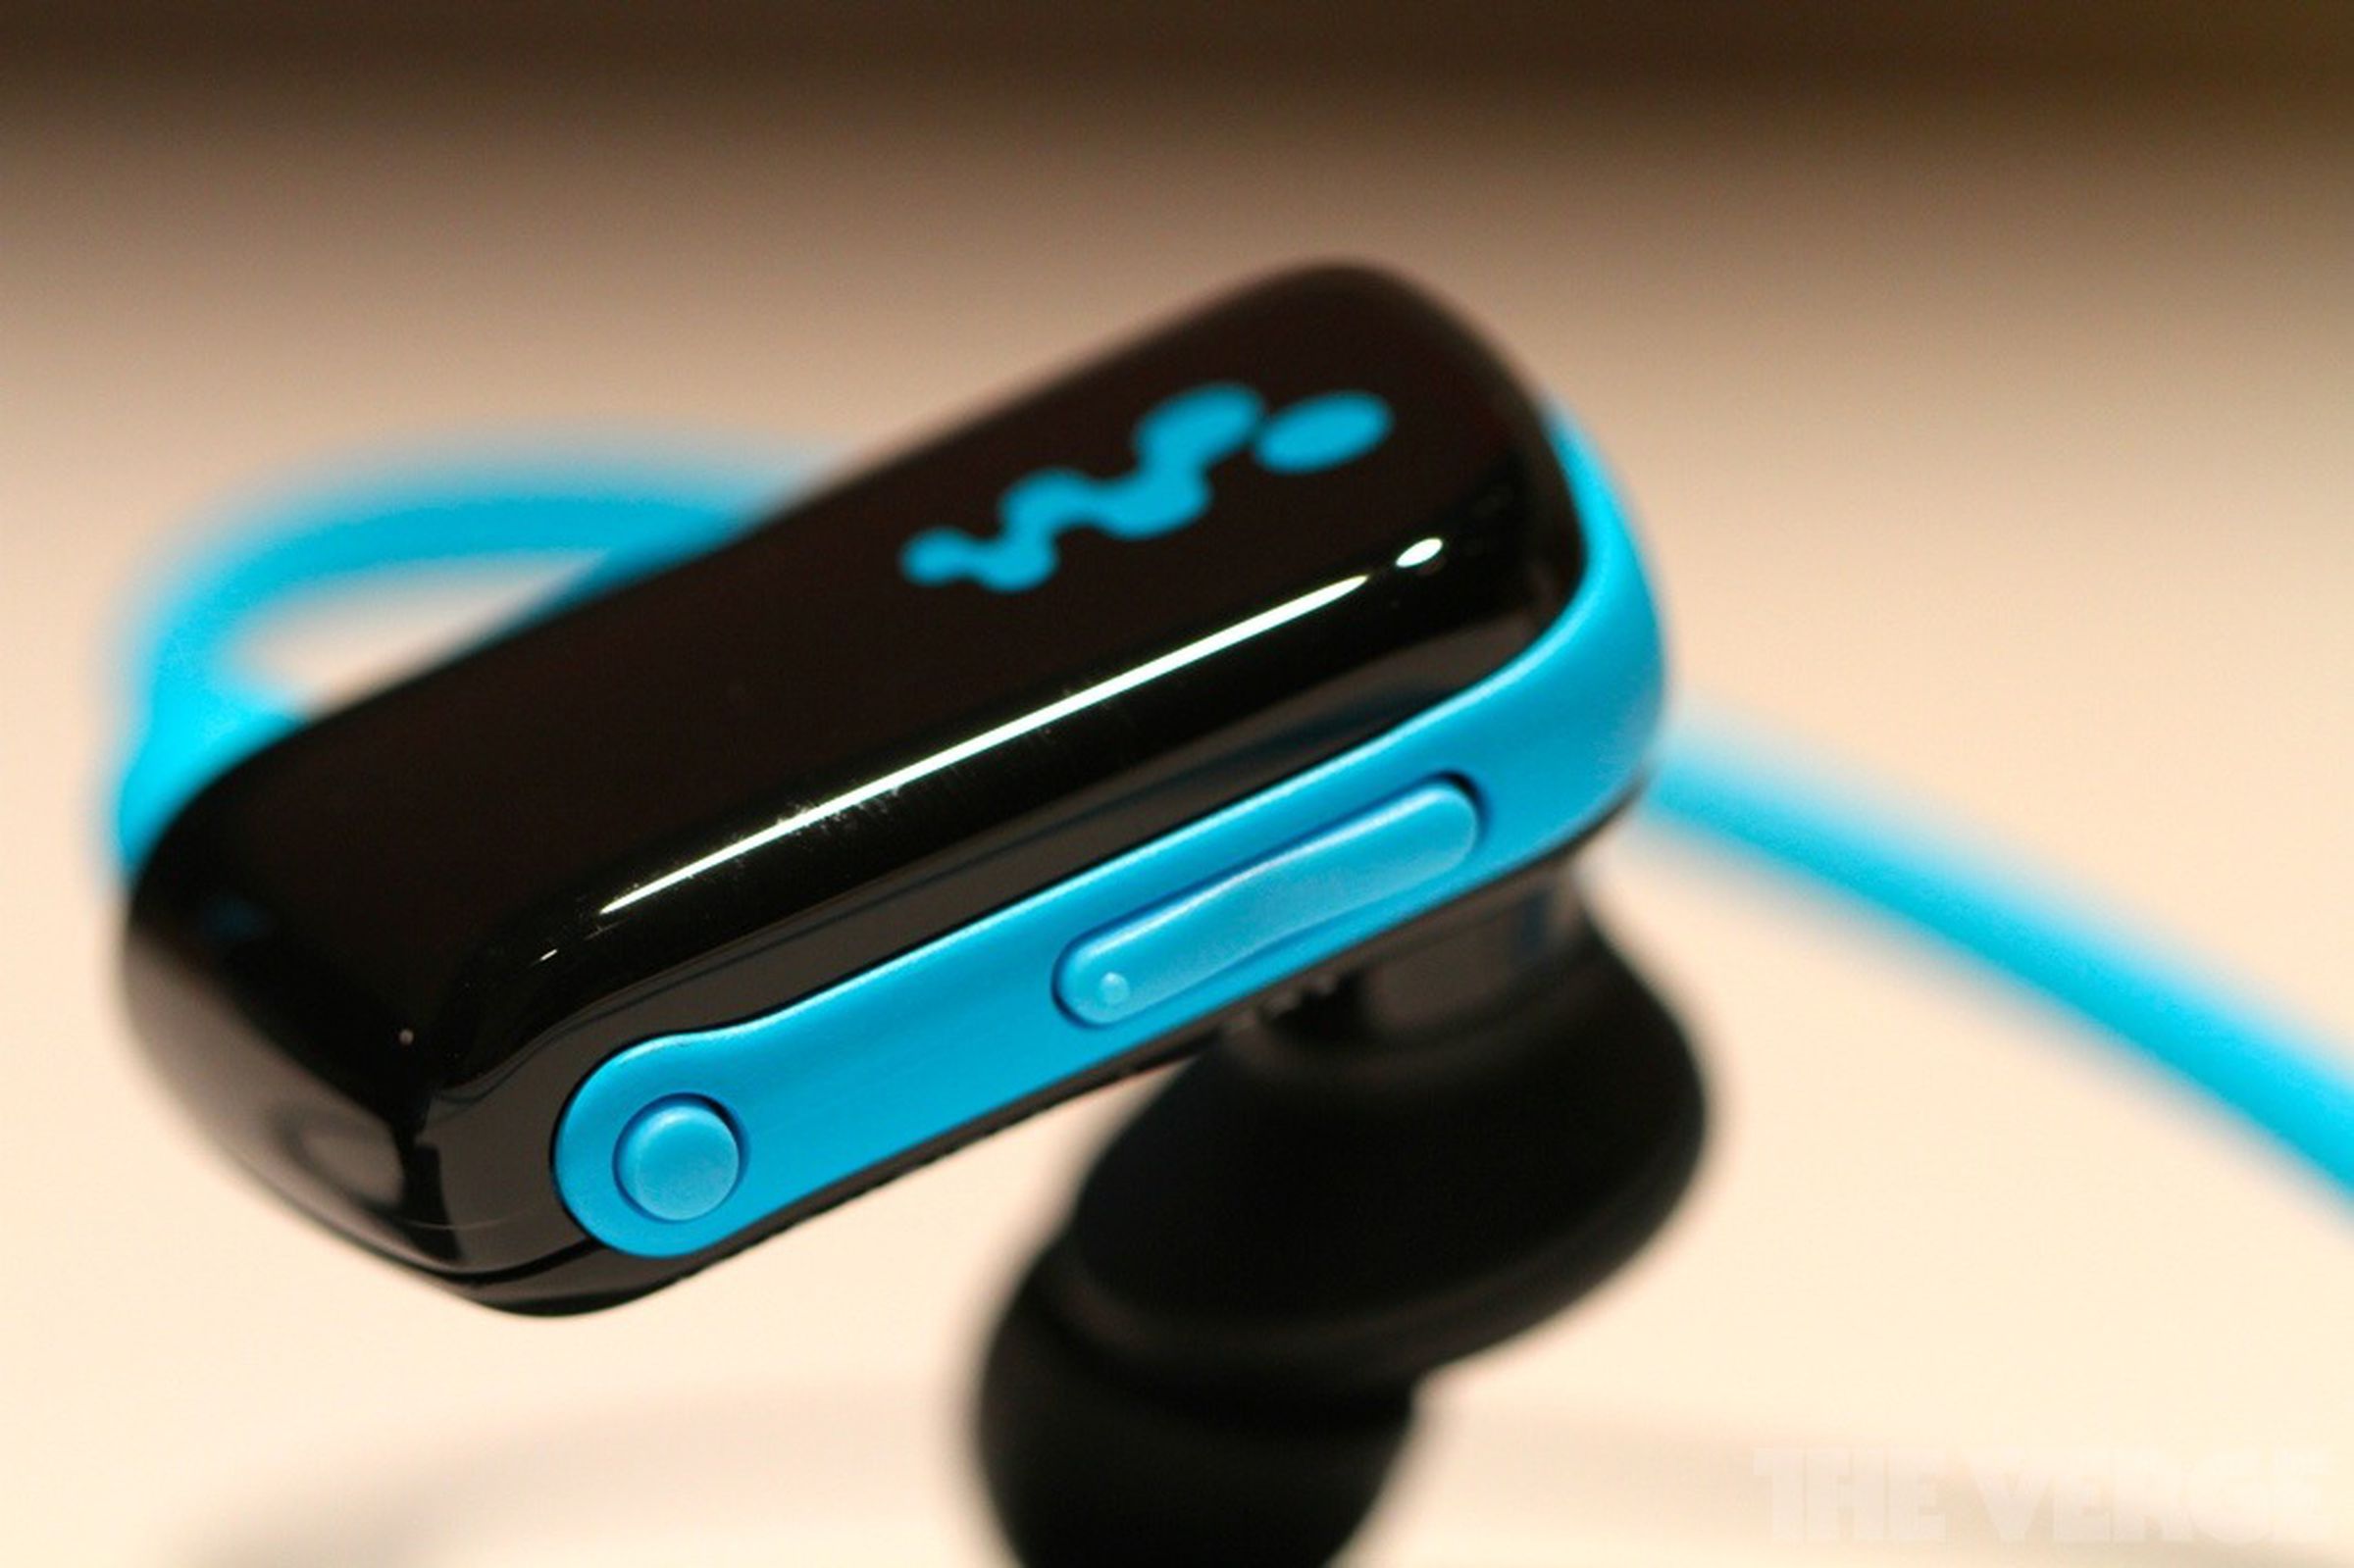 Sony's quick charging, waterproof Walkman hands-on photos